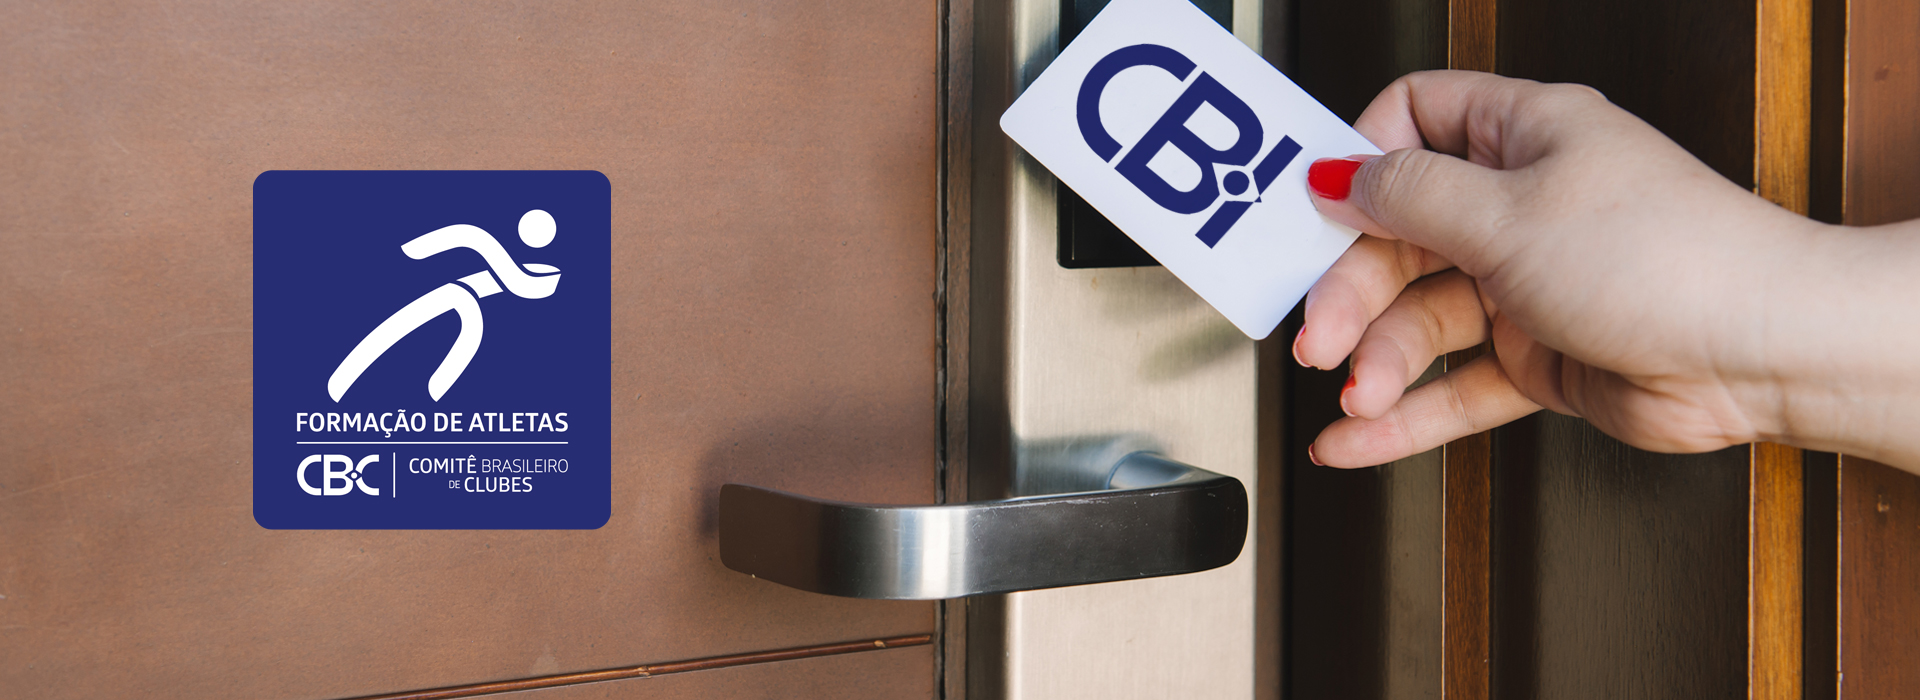 Rede Accor de Hotéis e CBC fecham acordo de parceria para descontos e vantagens nas hospedagens durante CBI